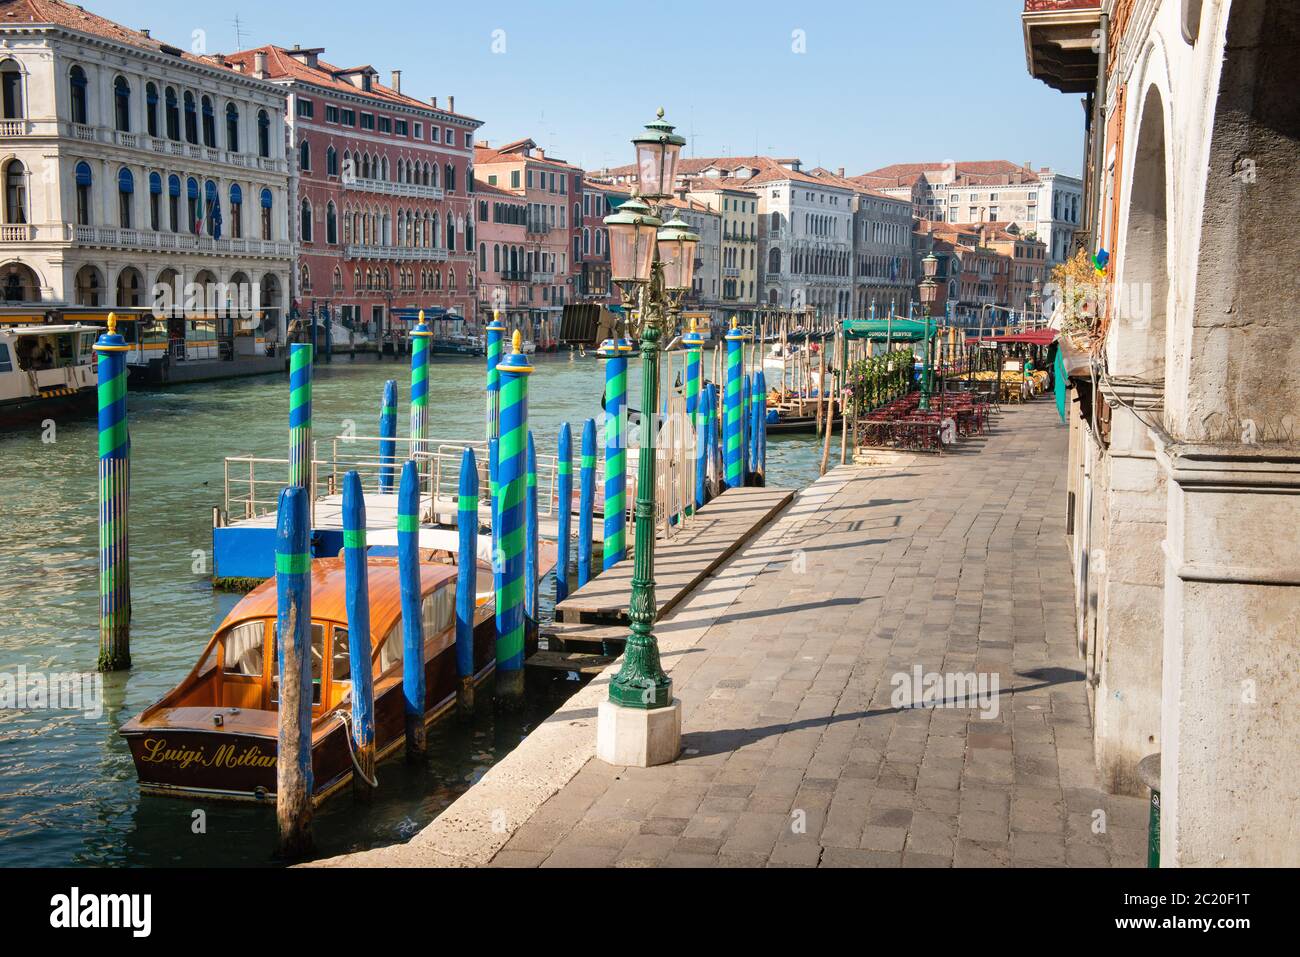 Barche vuote ormeggiate lungo la via deserta sul Canal Grande a Venezia Italia Foto Stock